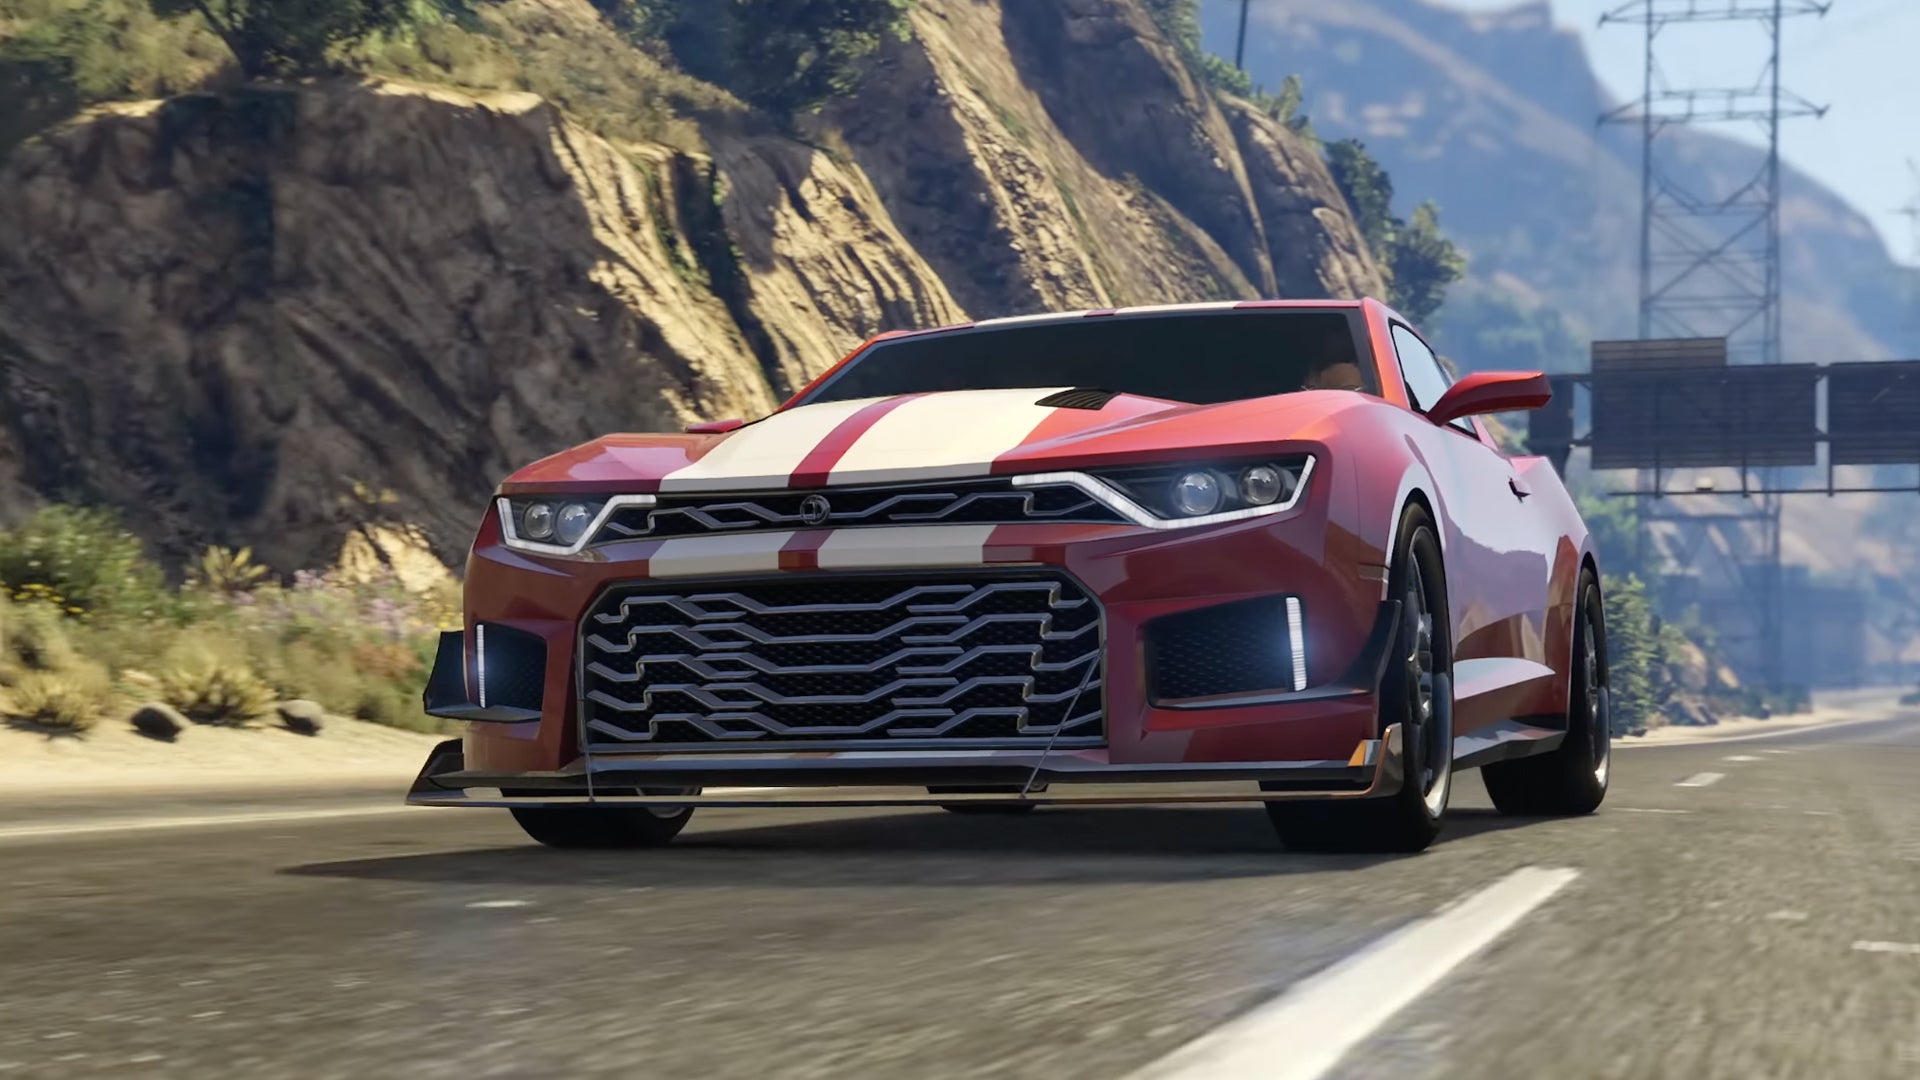 Najnowsza premiera samochodu GTA V wygląda prawie dokładnie jak Chevy Camaro